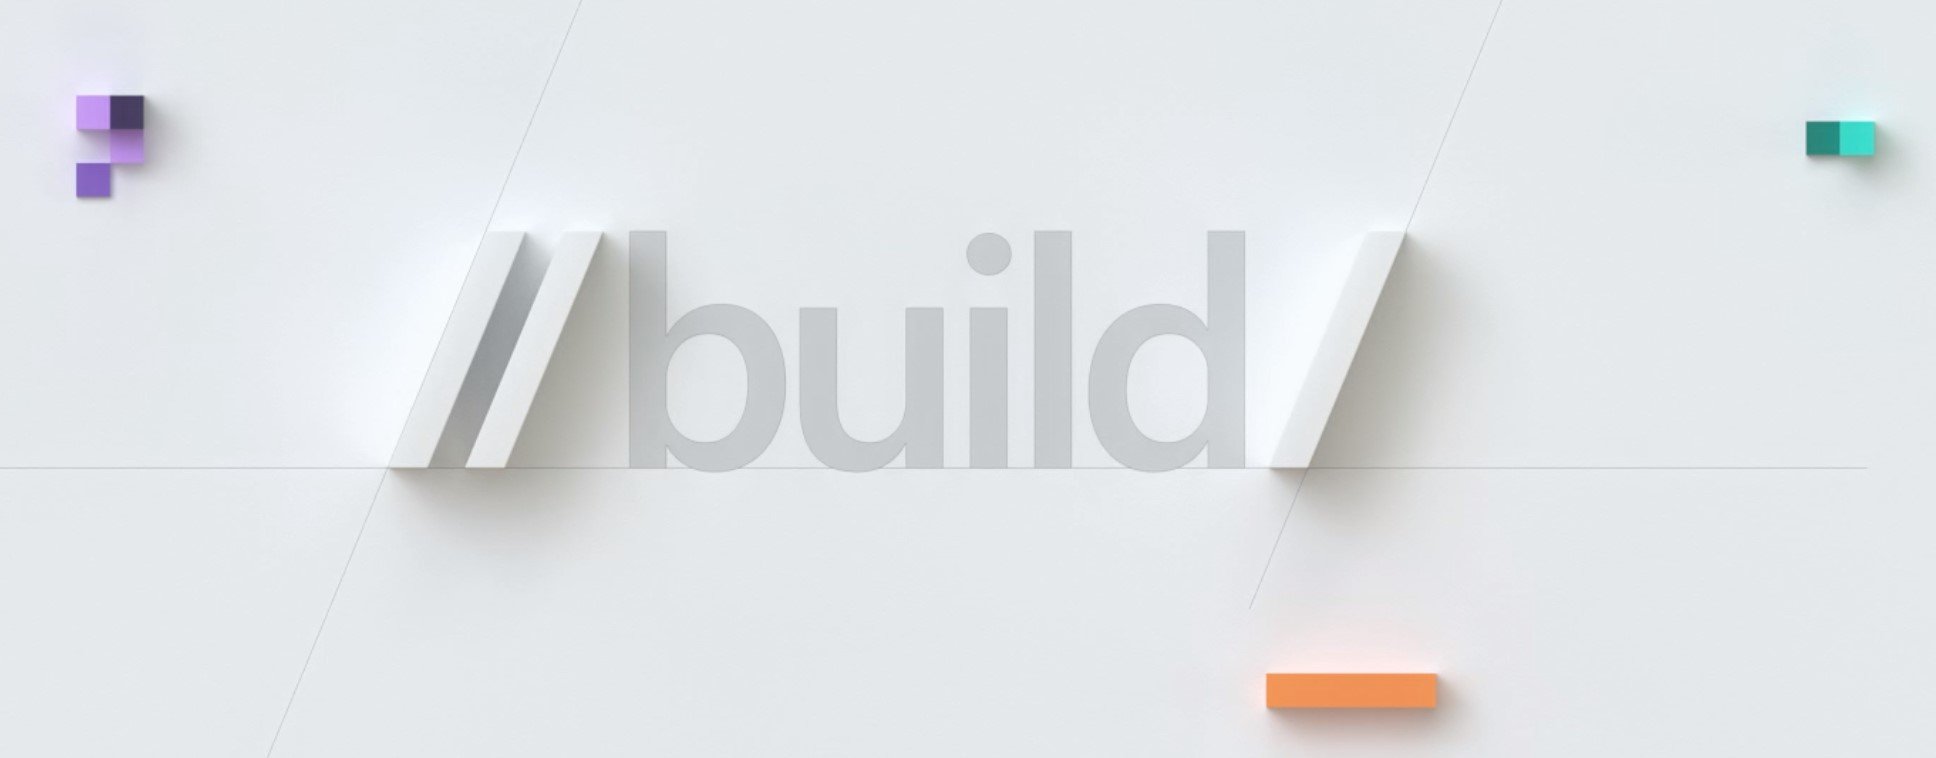 La Build 2019 de Microsoft será del 6 al 8 de Mayo, es oficial